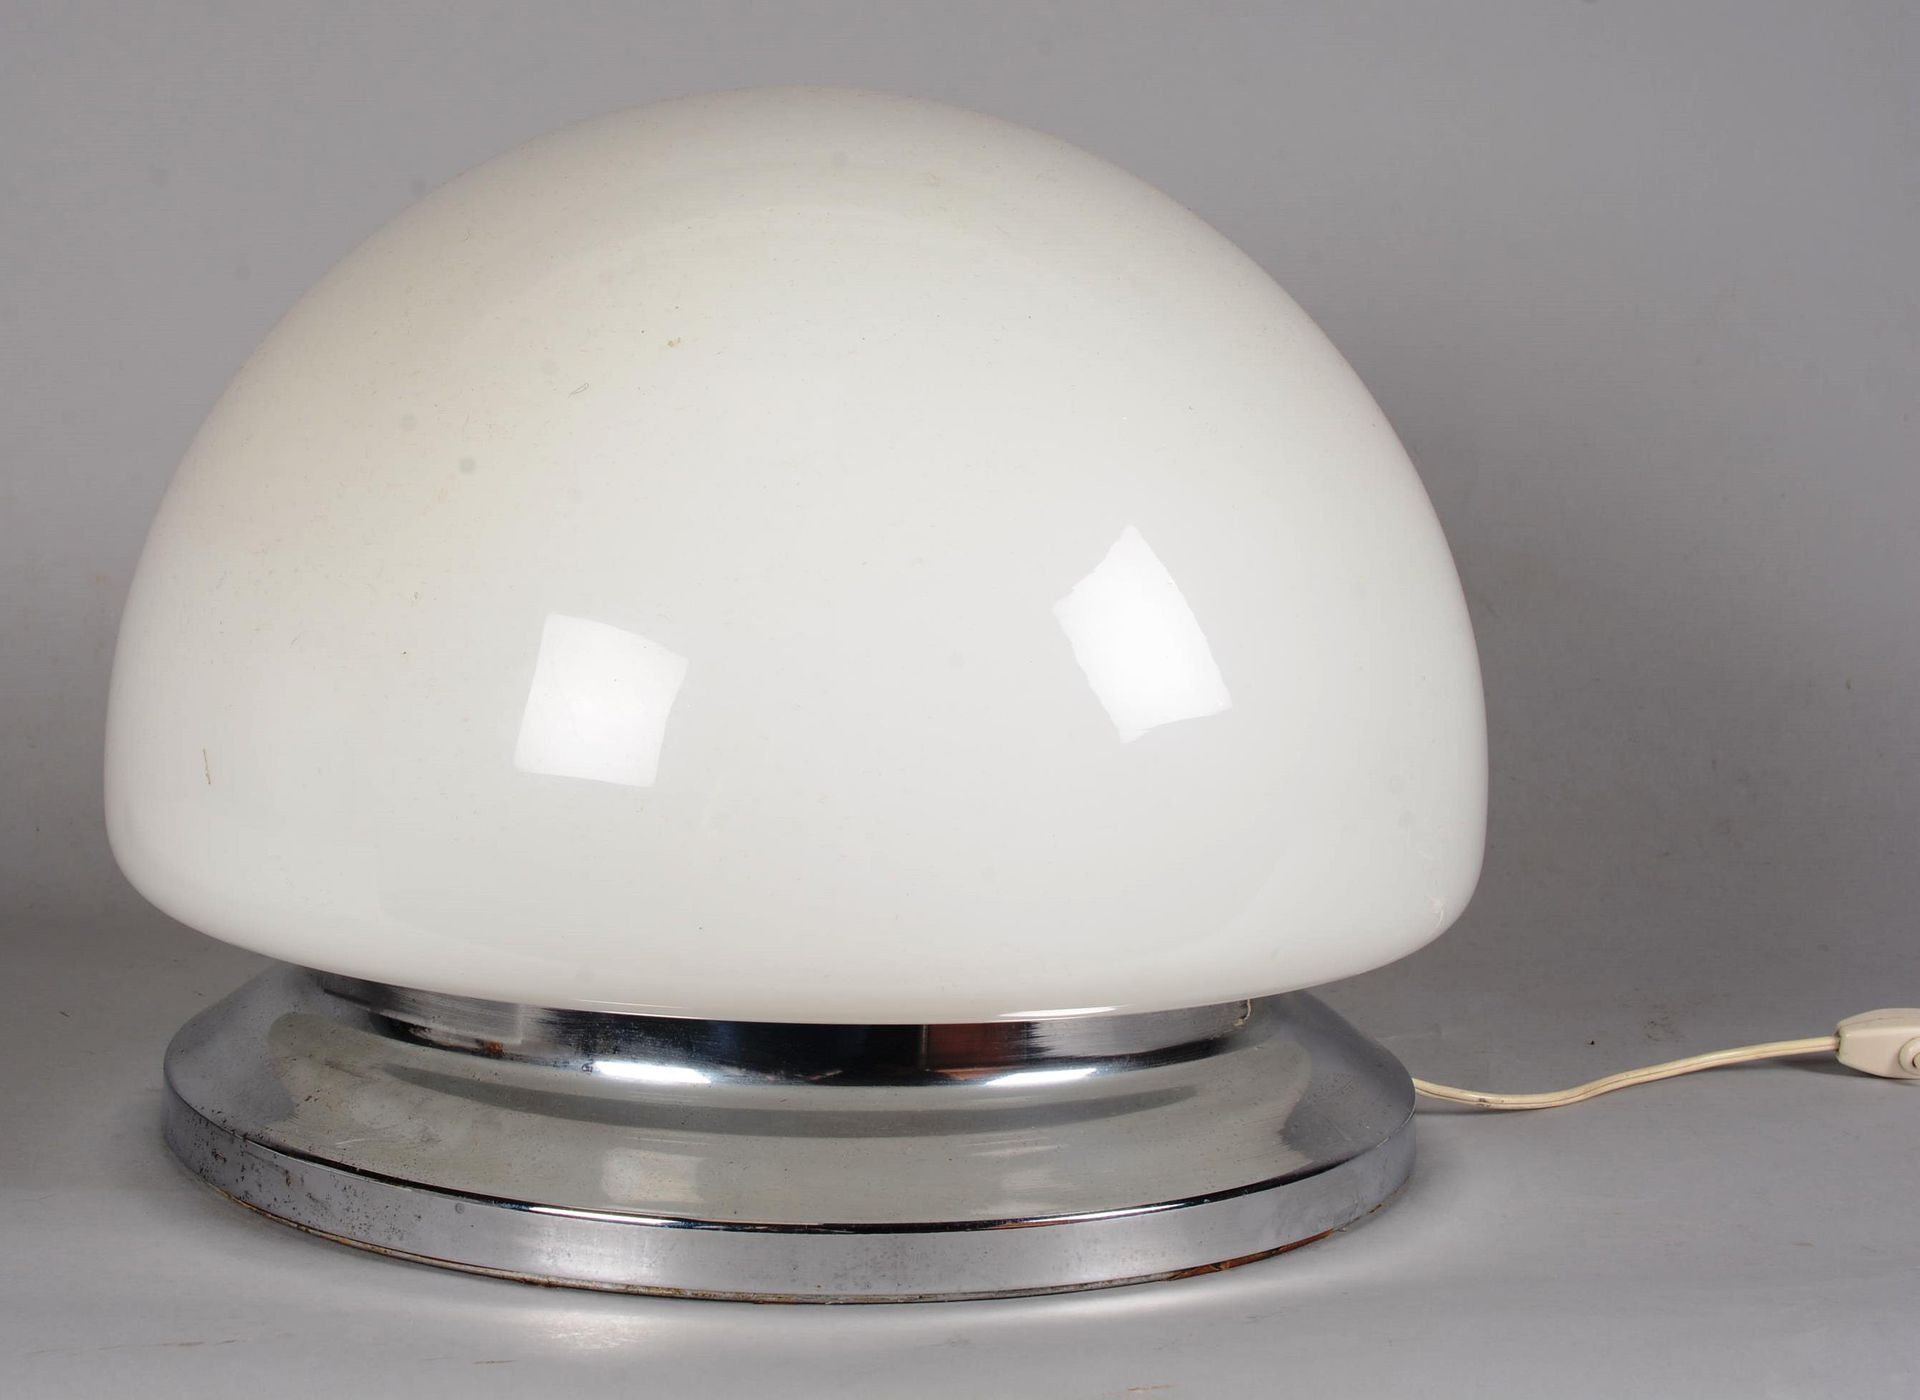 Lampe à poser en globe opalin 乳白色的球状台灯，放在一个圆形的镀铬金属底座上。

高度：31厘米